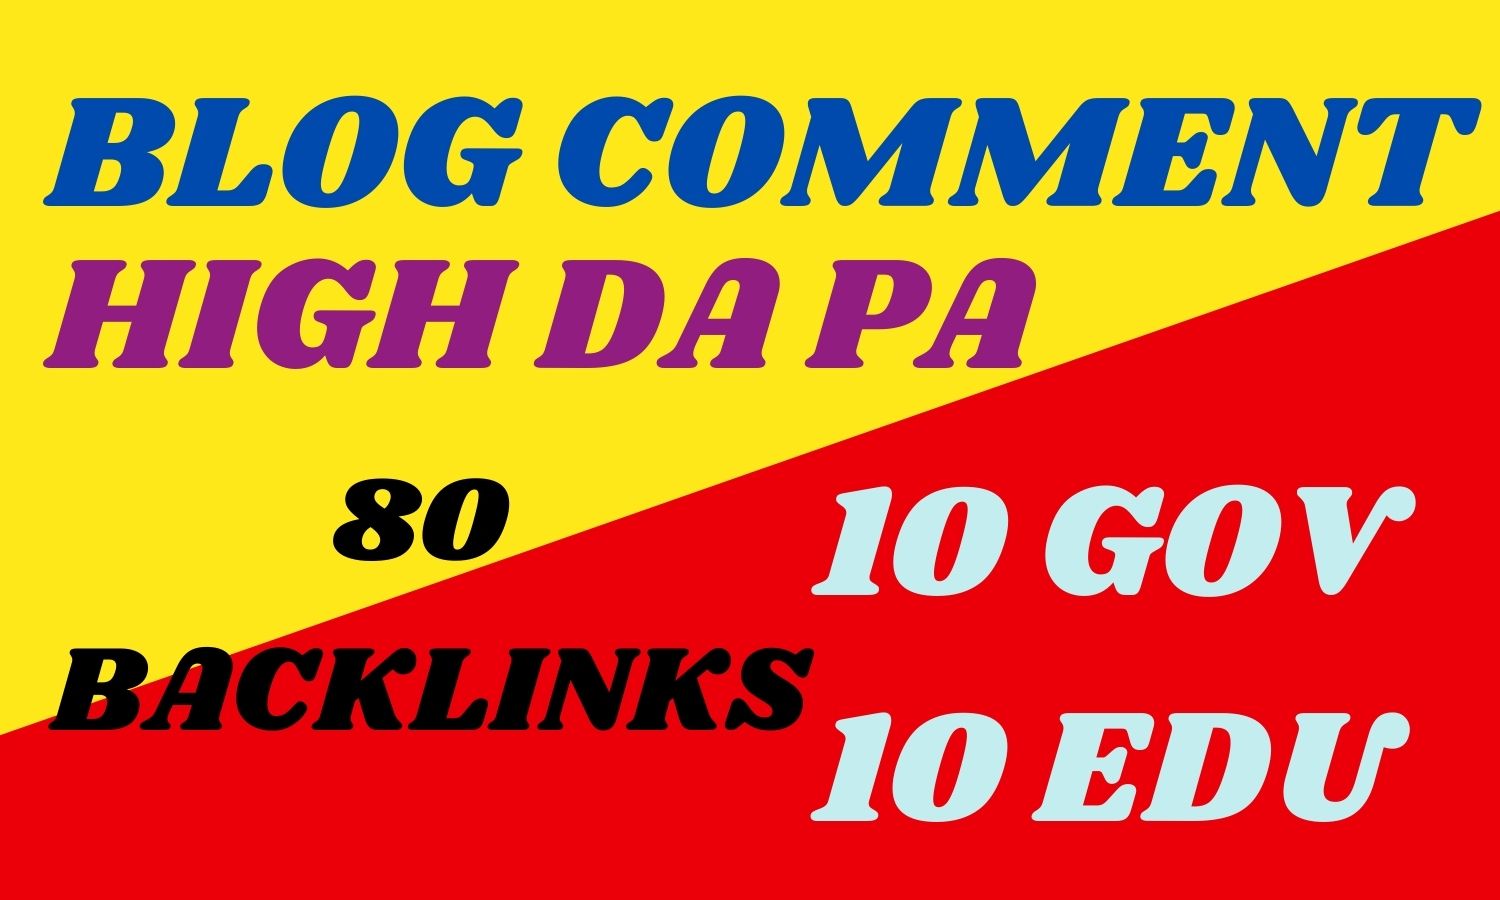 10 EDU 10 GOV and 40 blog comments total 60 backlinks High DA PA